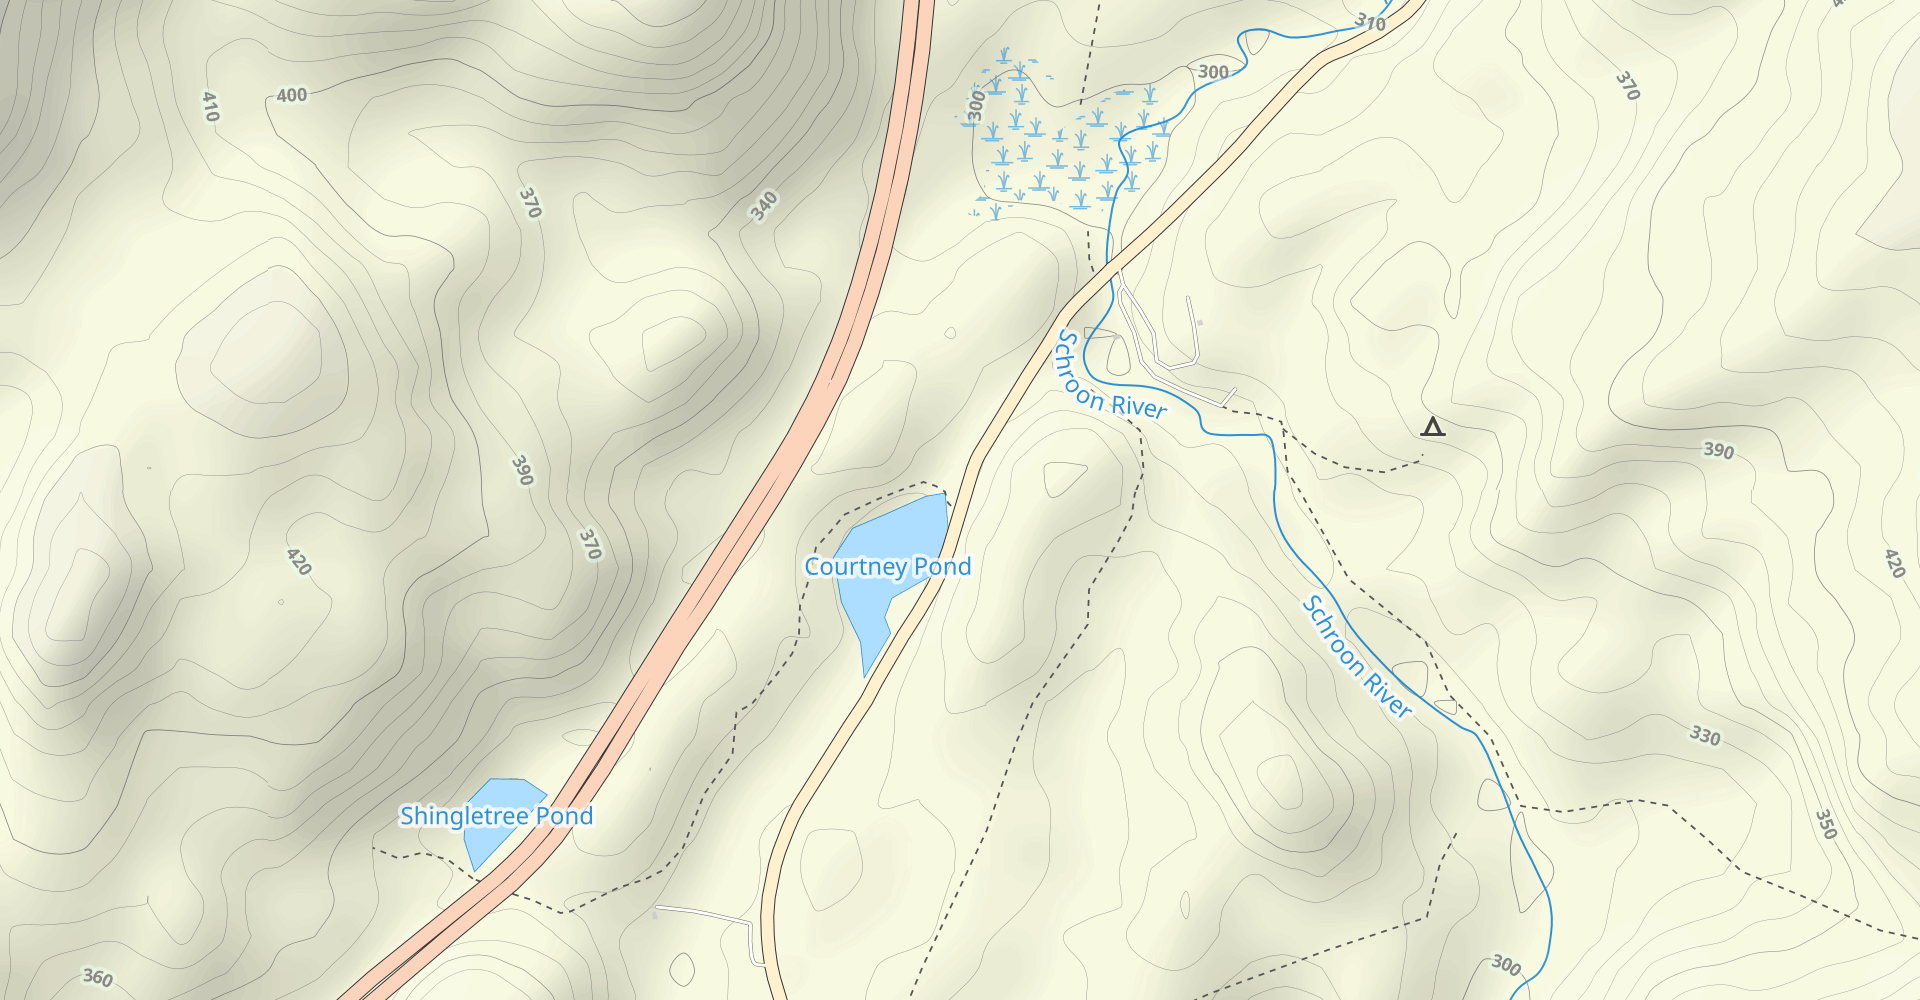 Shingletree Pond Trail